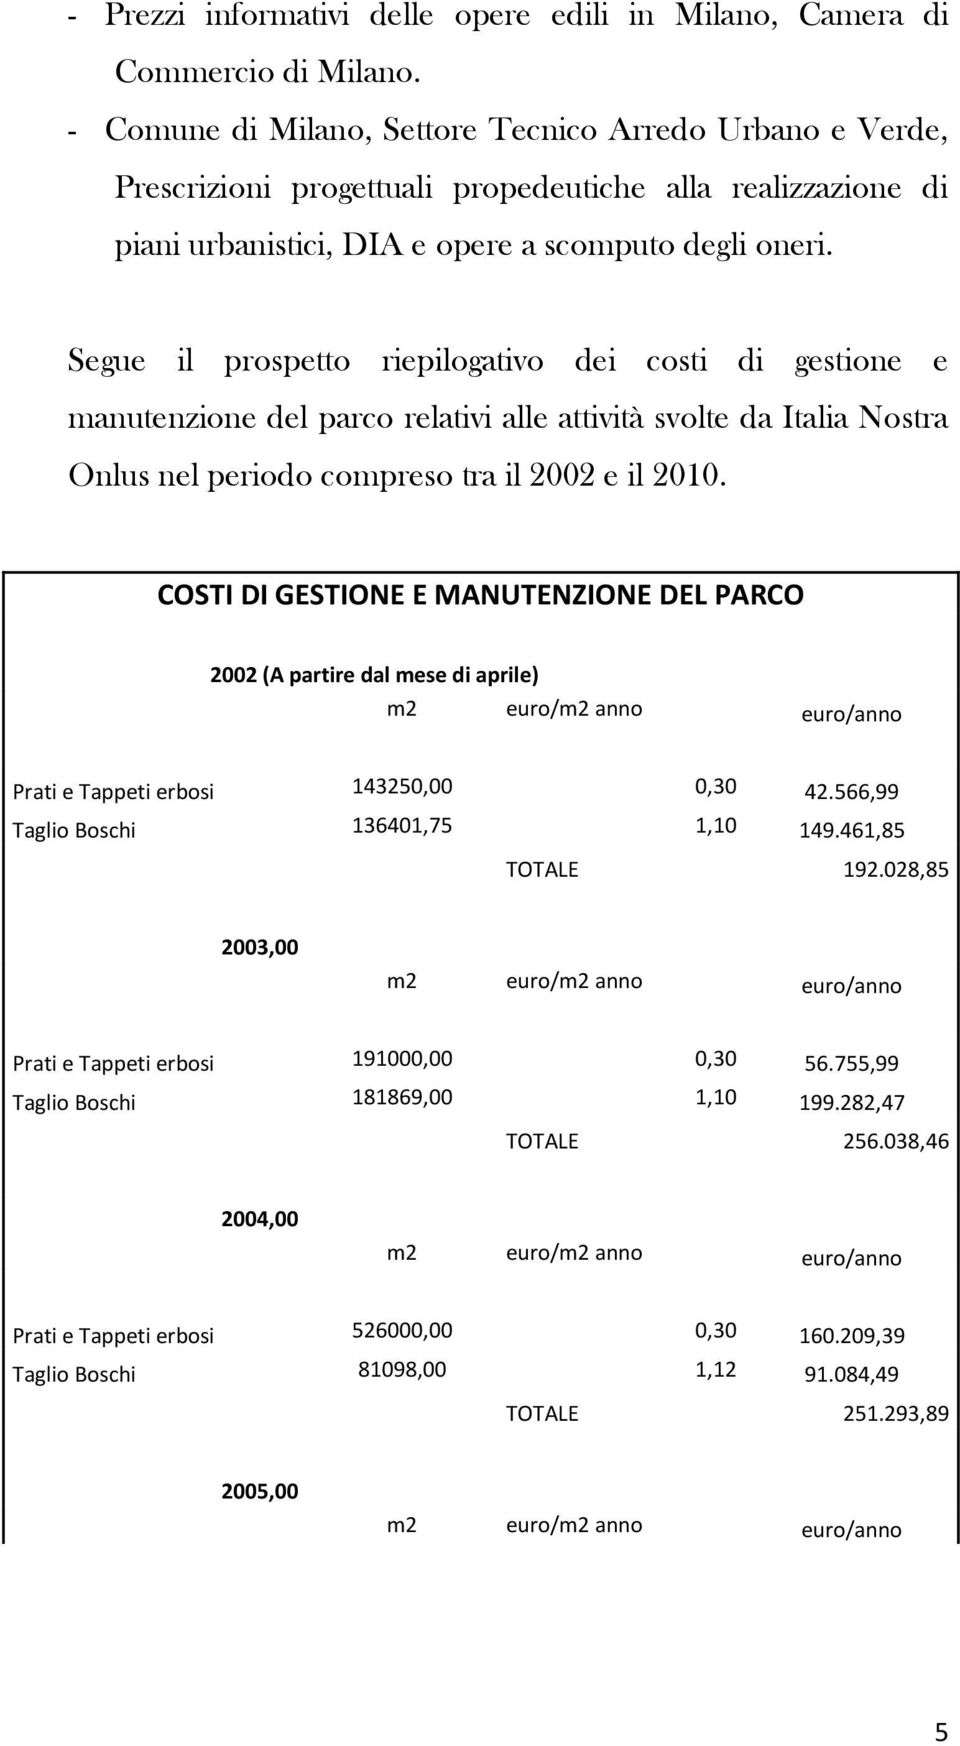 Segue il prospetto riepilogativo dei costi di gestione e manutenzione del parco relativi alle attività svolte da Italia Nostra Onlus nel periodo compreso tra il 2002 e il 2010.